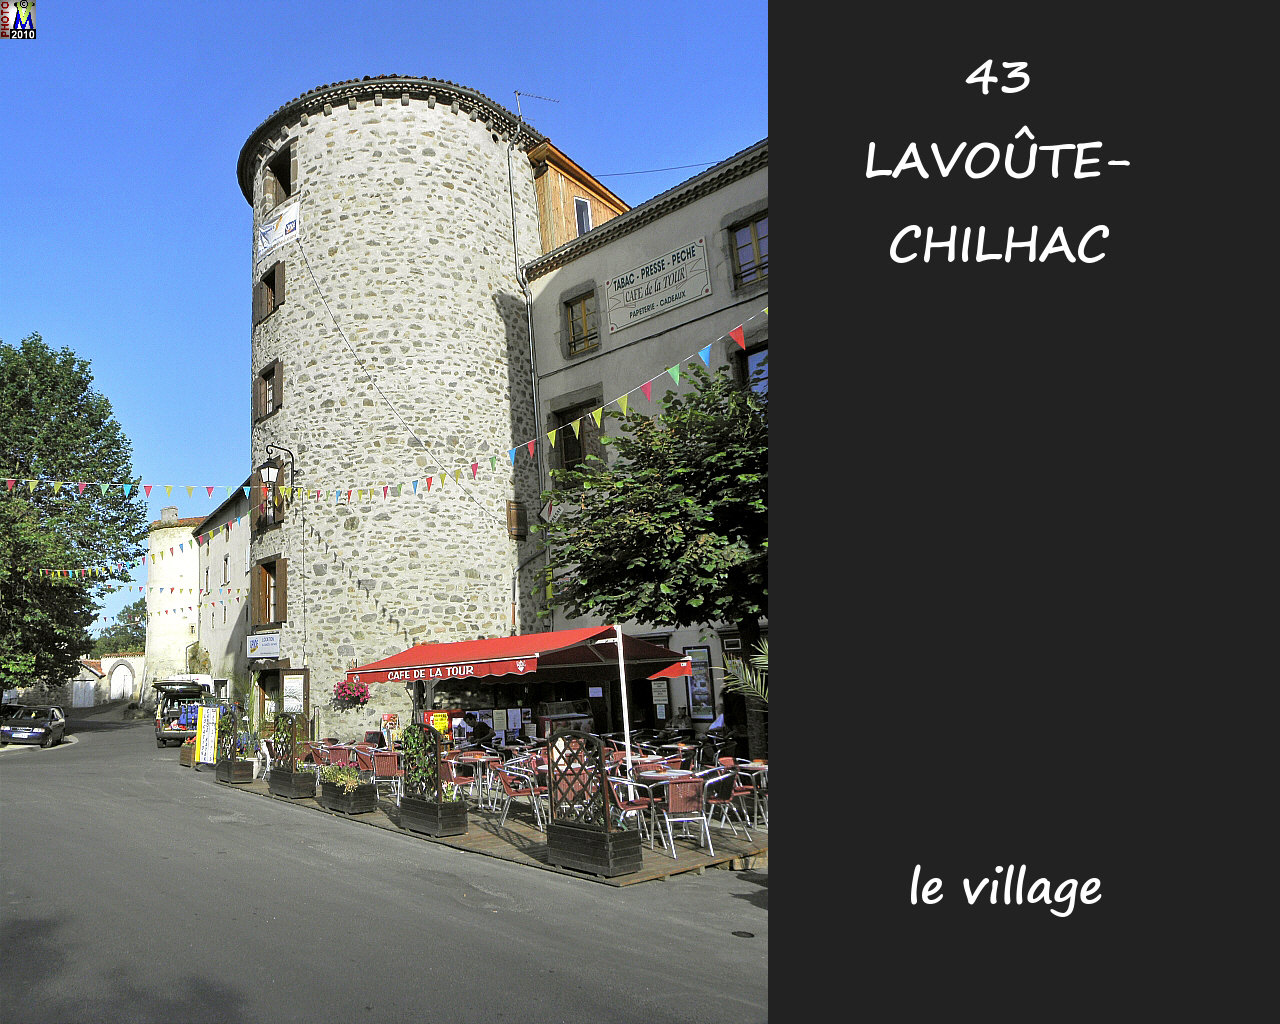 43LAVOUTE-CHILHAC_village_142.jpg